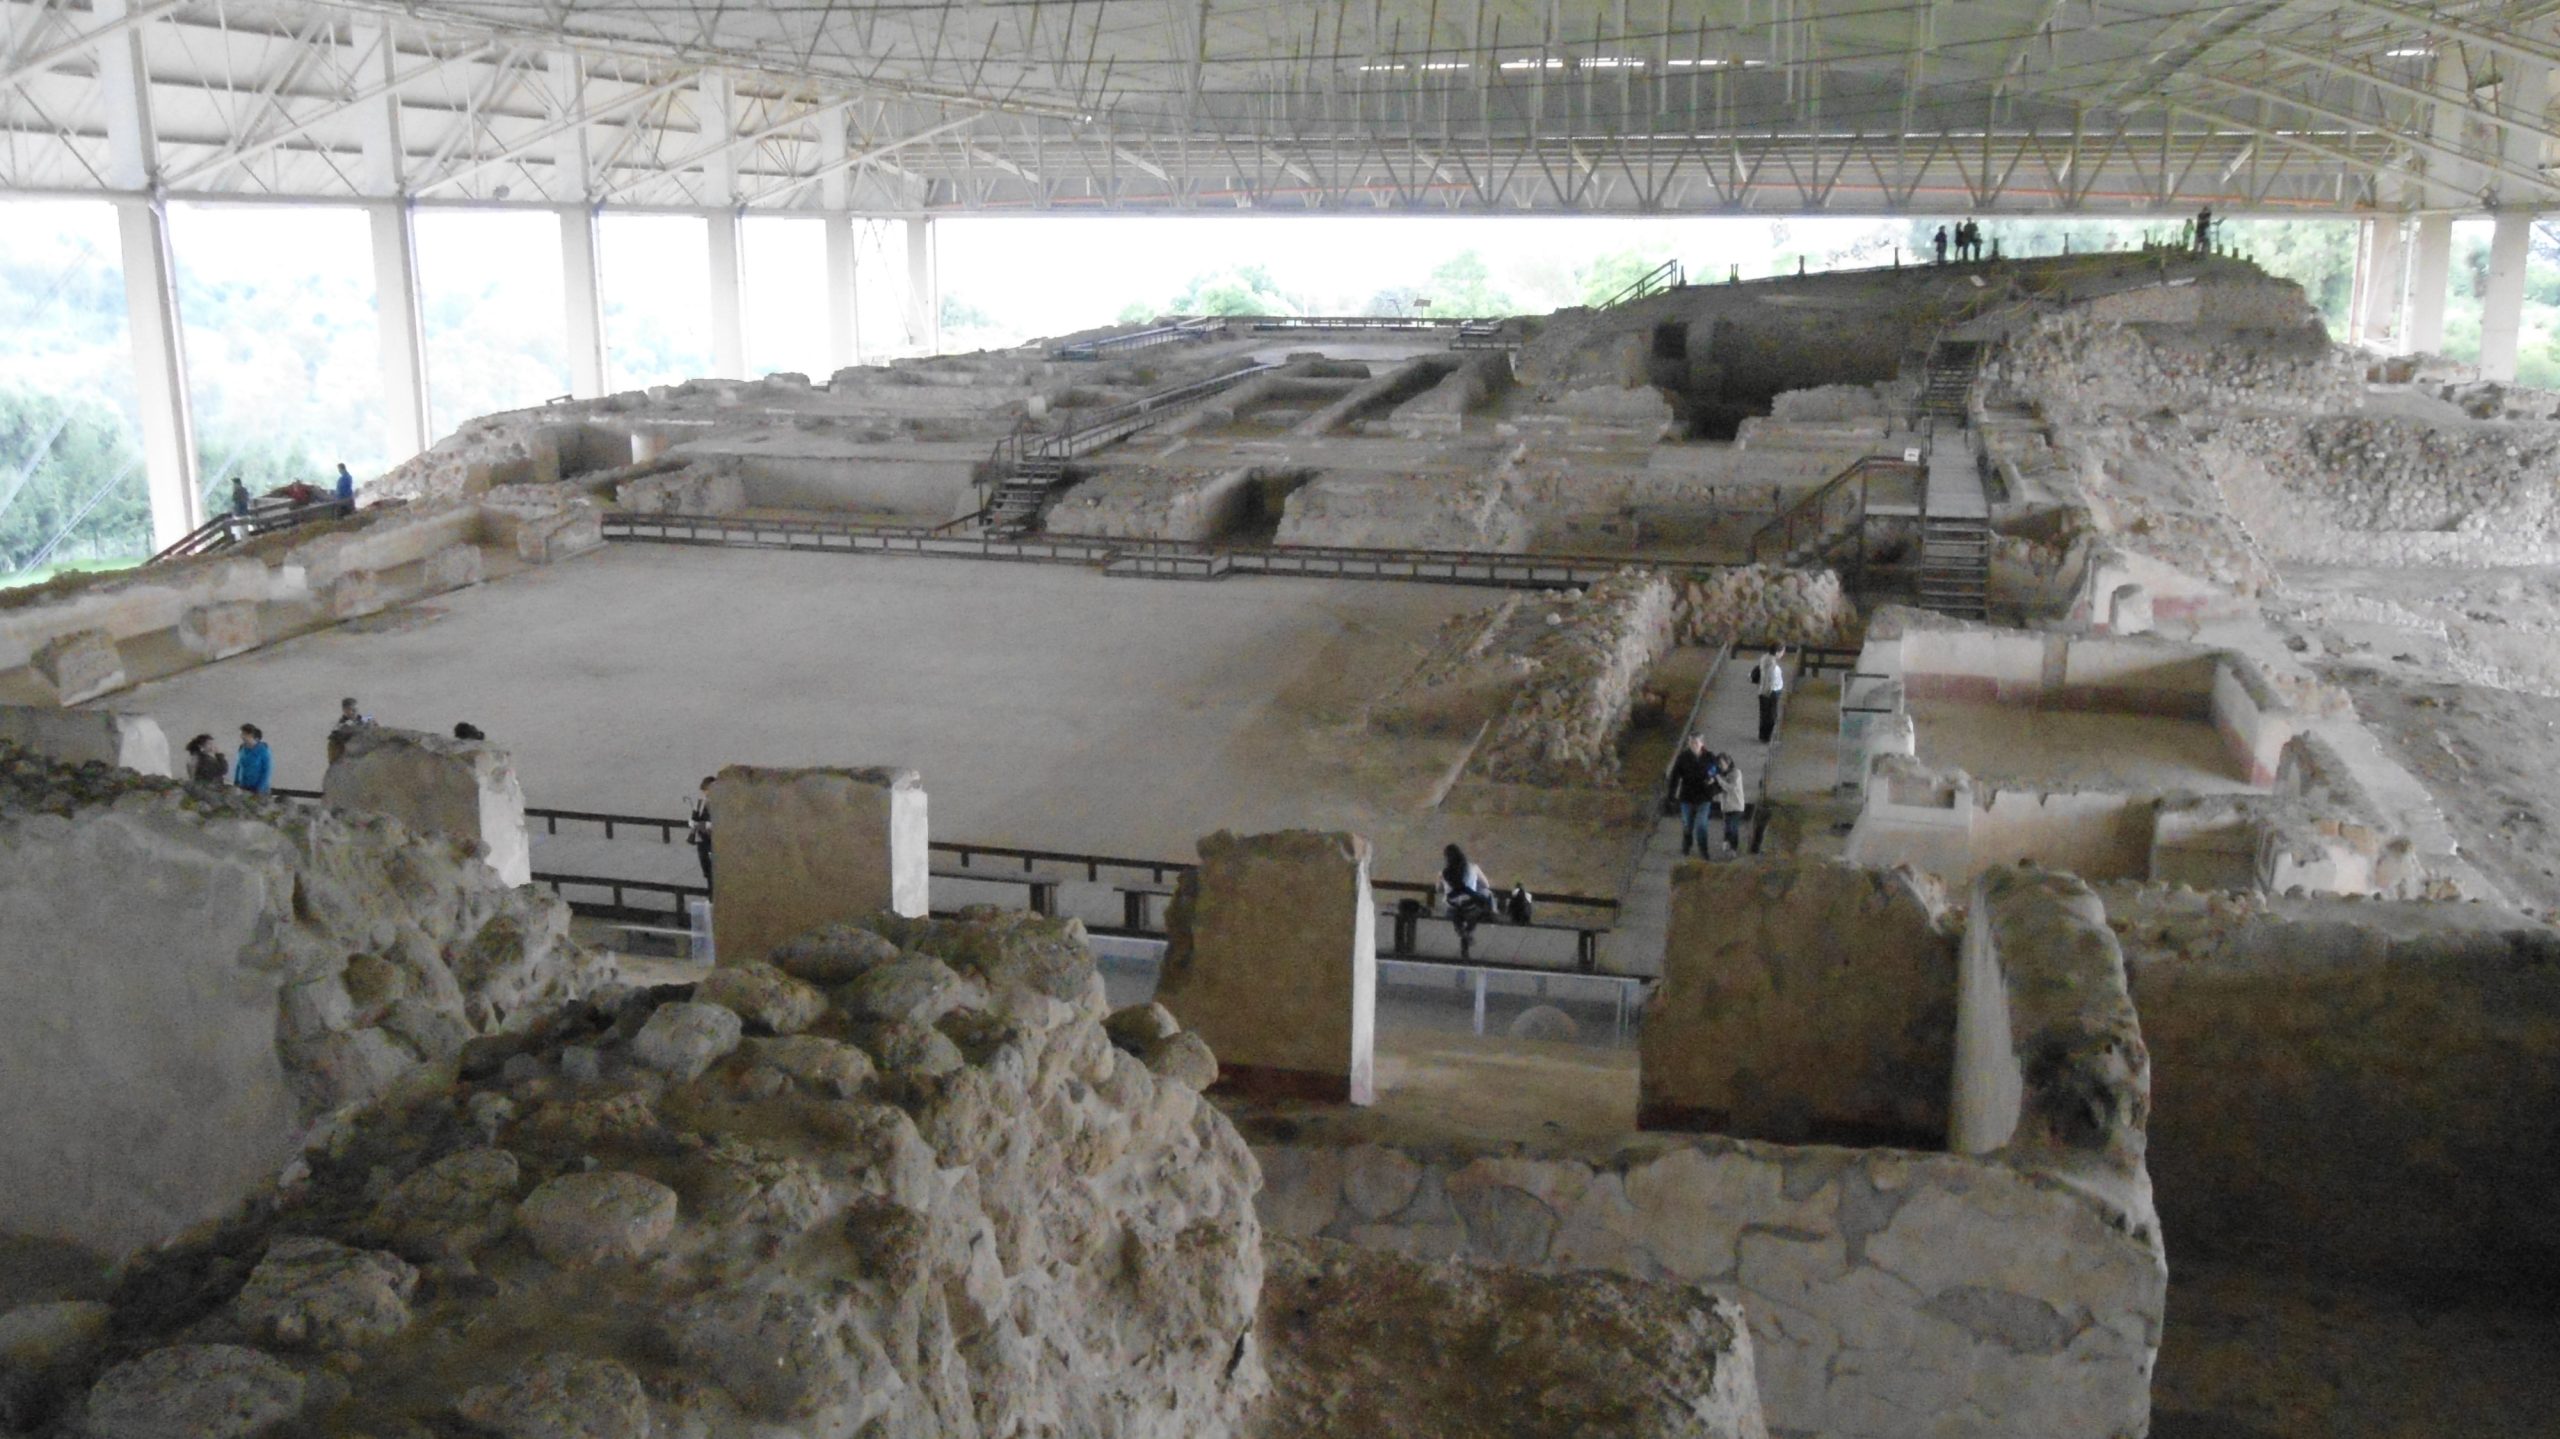 Cacaxtla Archaeological Site 2